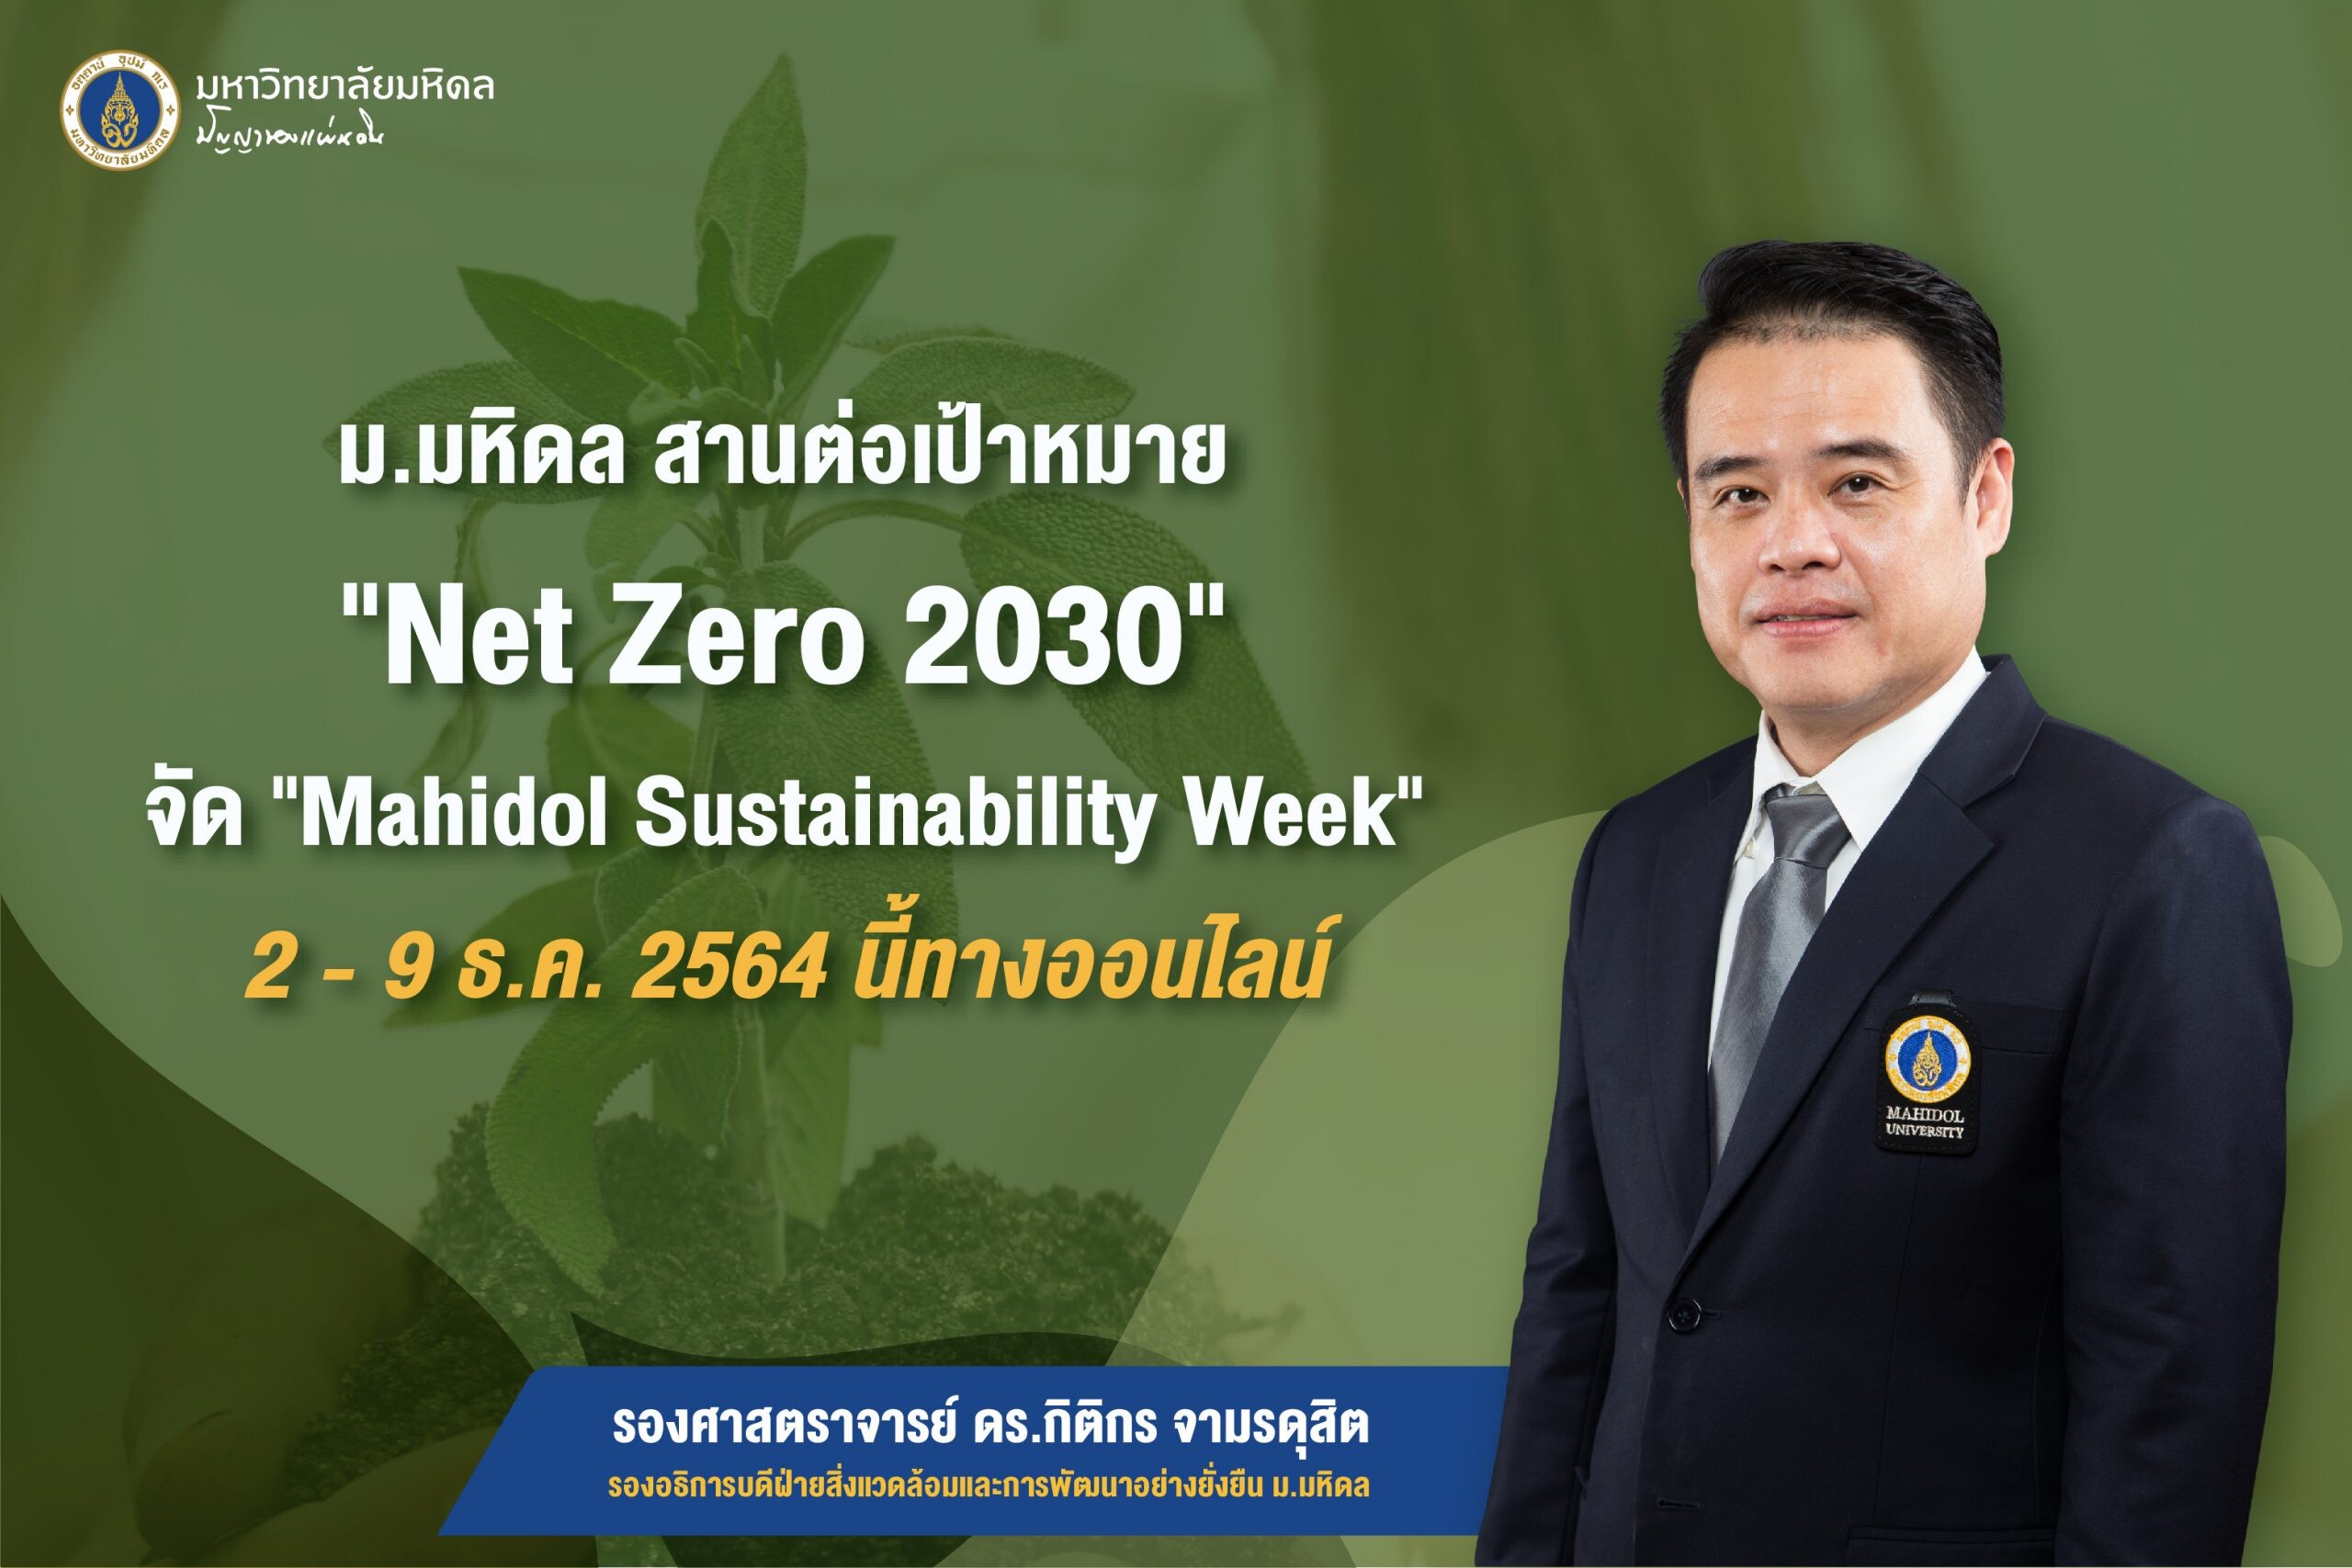 ม.มหิดล สานต่อเป้าหมาย "Net Zero 2030" จัด "Mahidol Sustainability Week" 2 - 9 ธ.ค.2564 นี้ทางออนไลน์